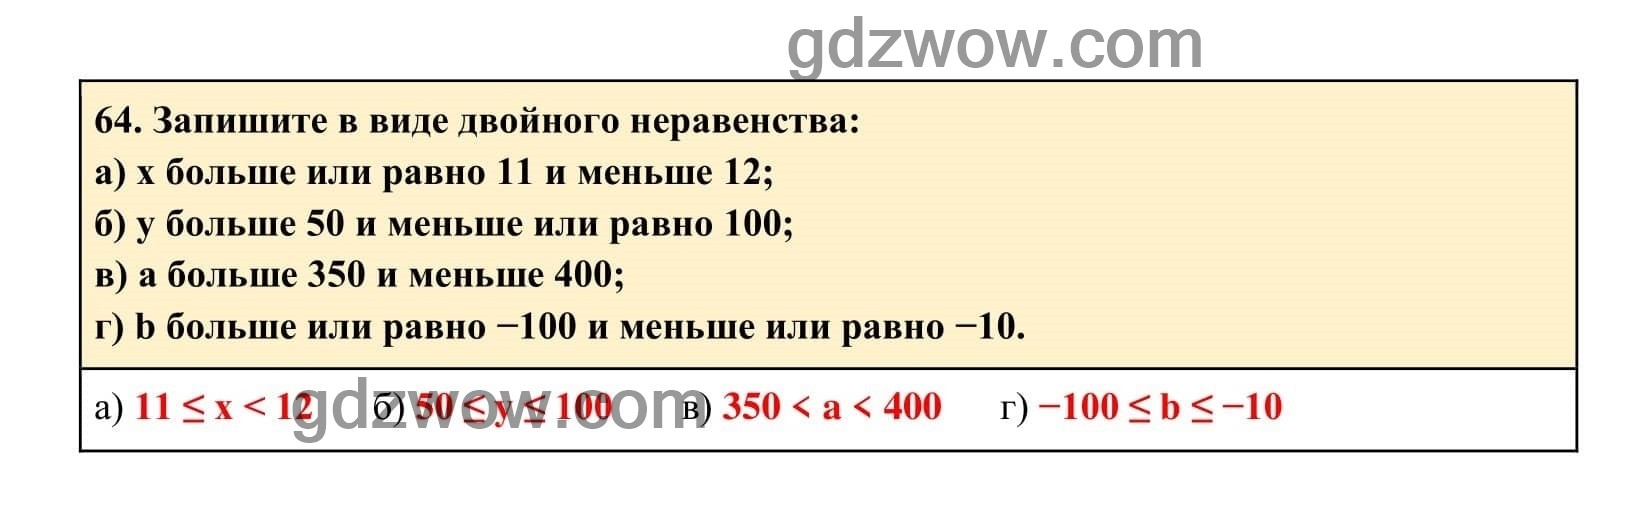 Упражнение 64 - ГДЗ по Алгебре 7 класс Учебник Макарычев (решебник) - GDZwow